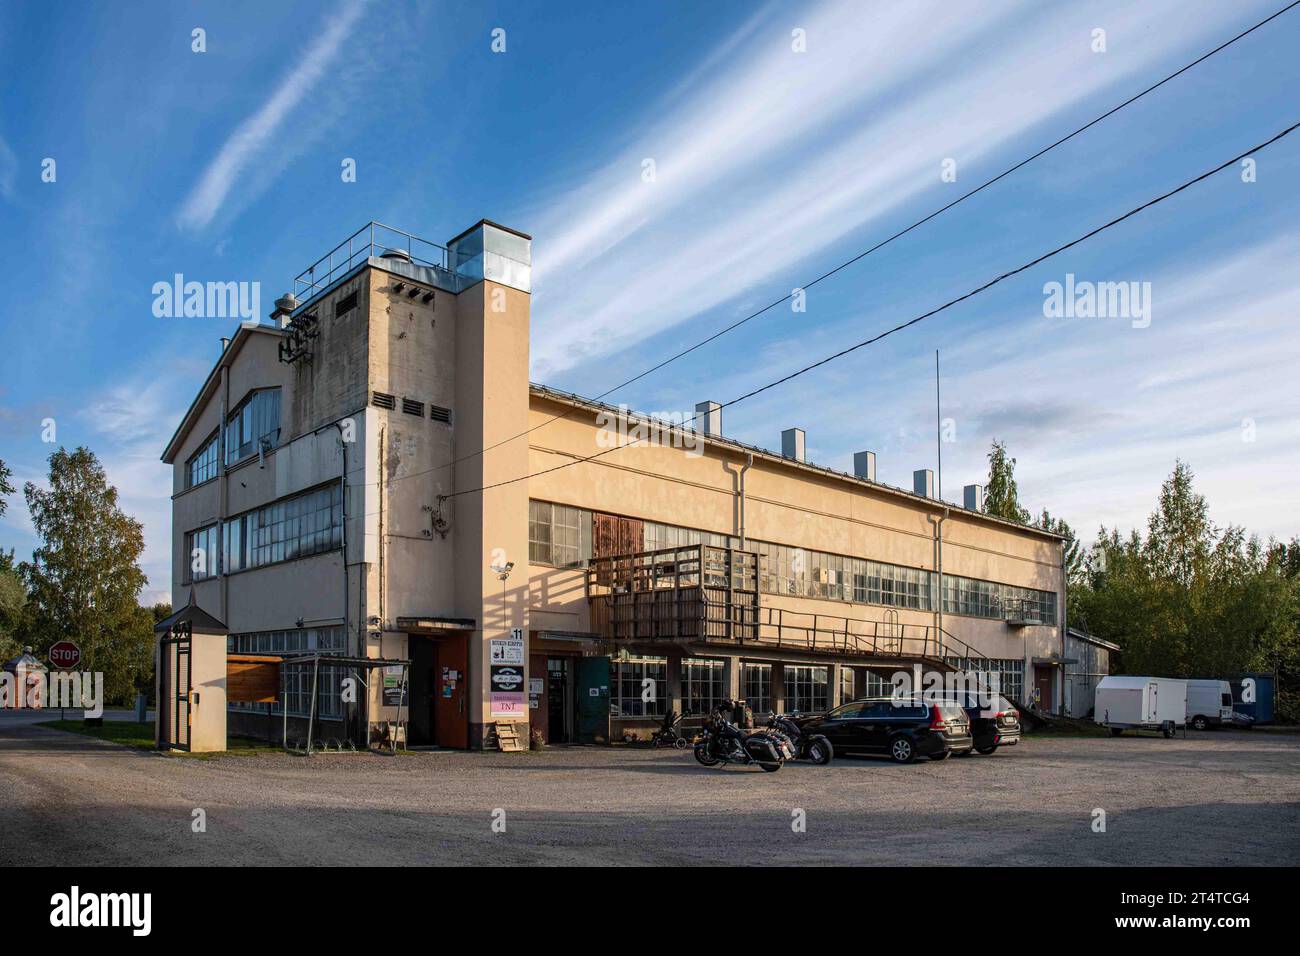 Ancien bâtiment industriel de Kellokosken Ruukki, aujourd'hui magasin d'occasion, sous le soleil du soir dans le quartier Kellokoski de Tuusula, Finlande Banque D'Images